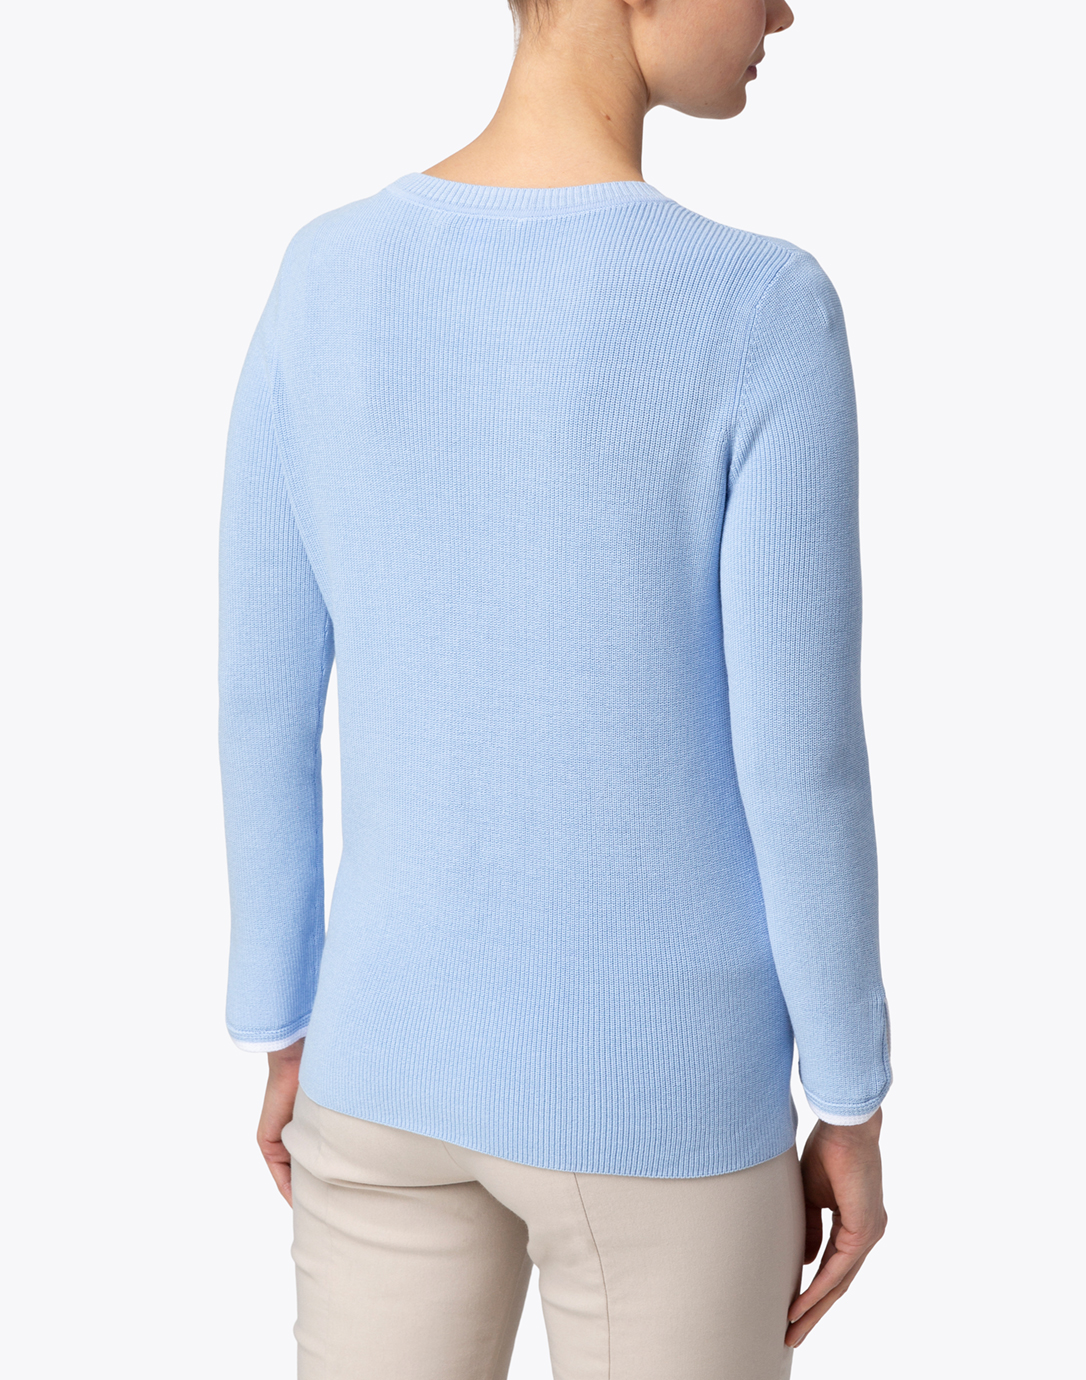 Cornflower Blue Cotton Sweater with White Trim | Belford | Halsbrook